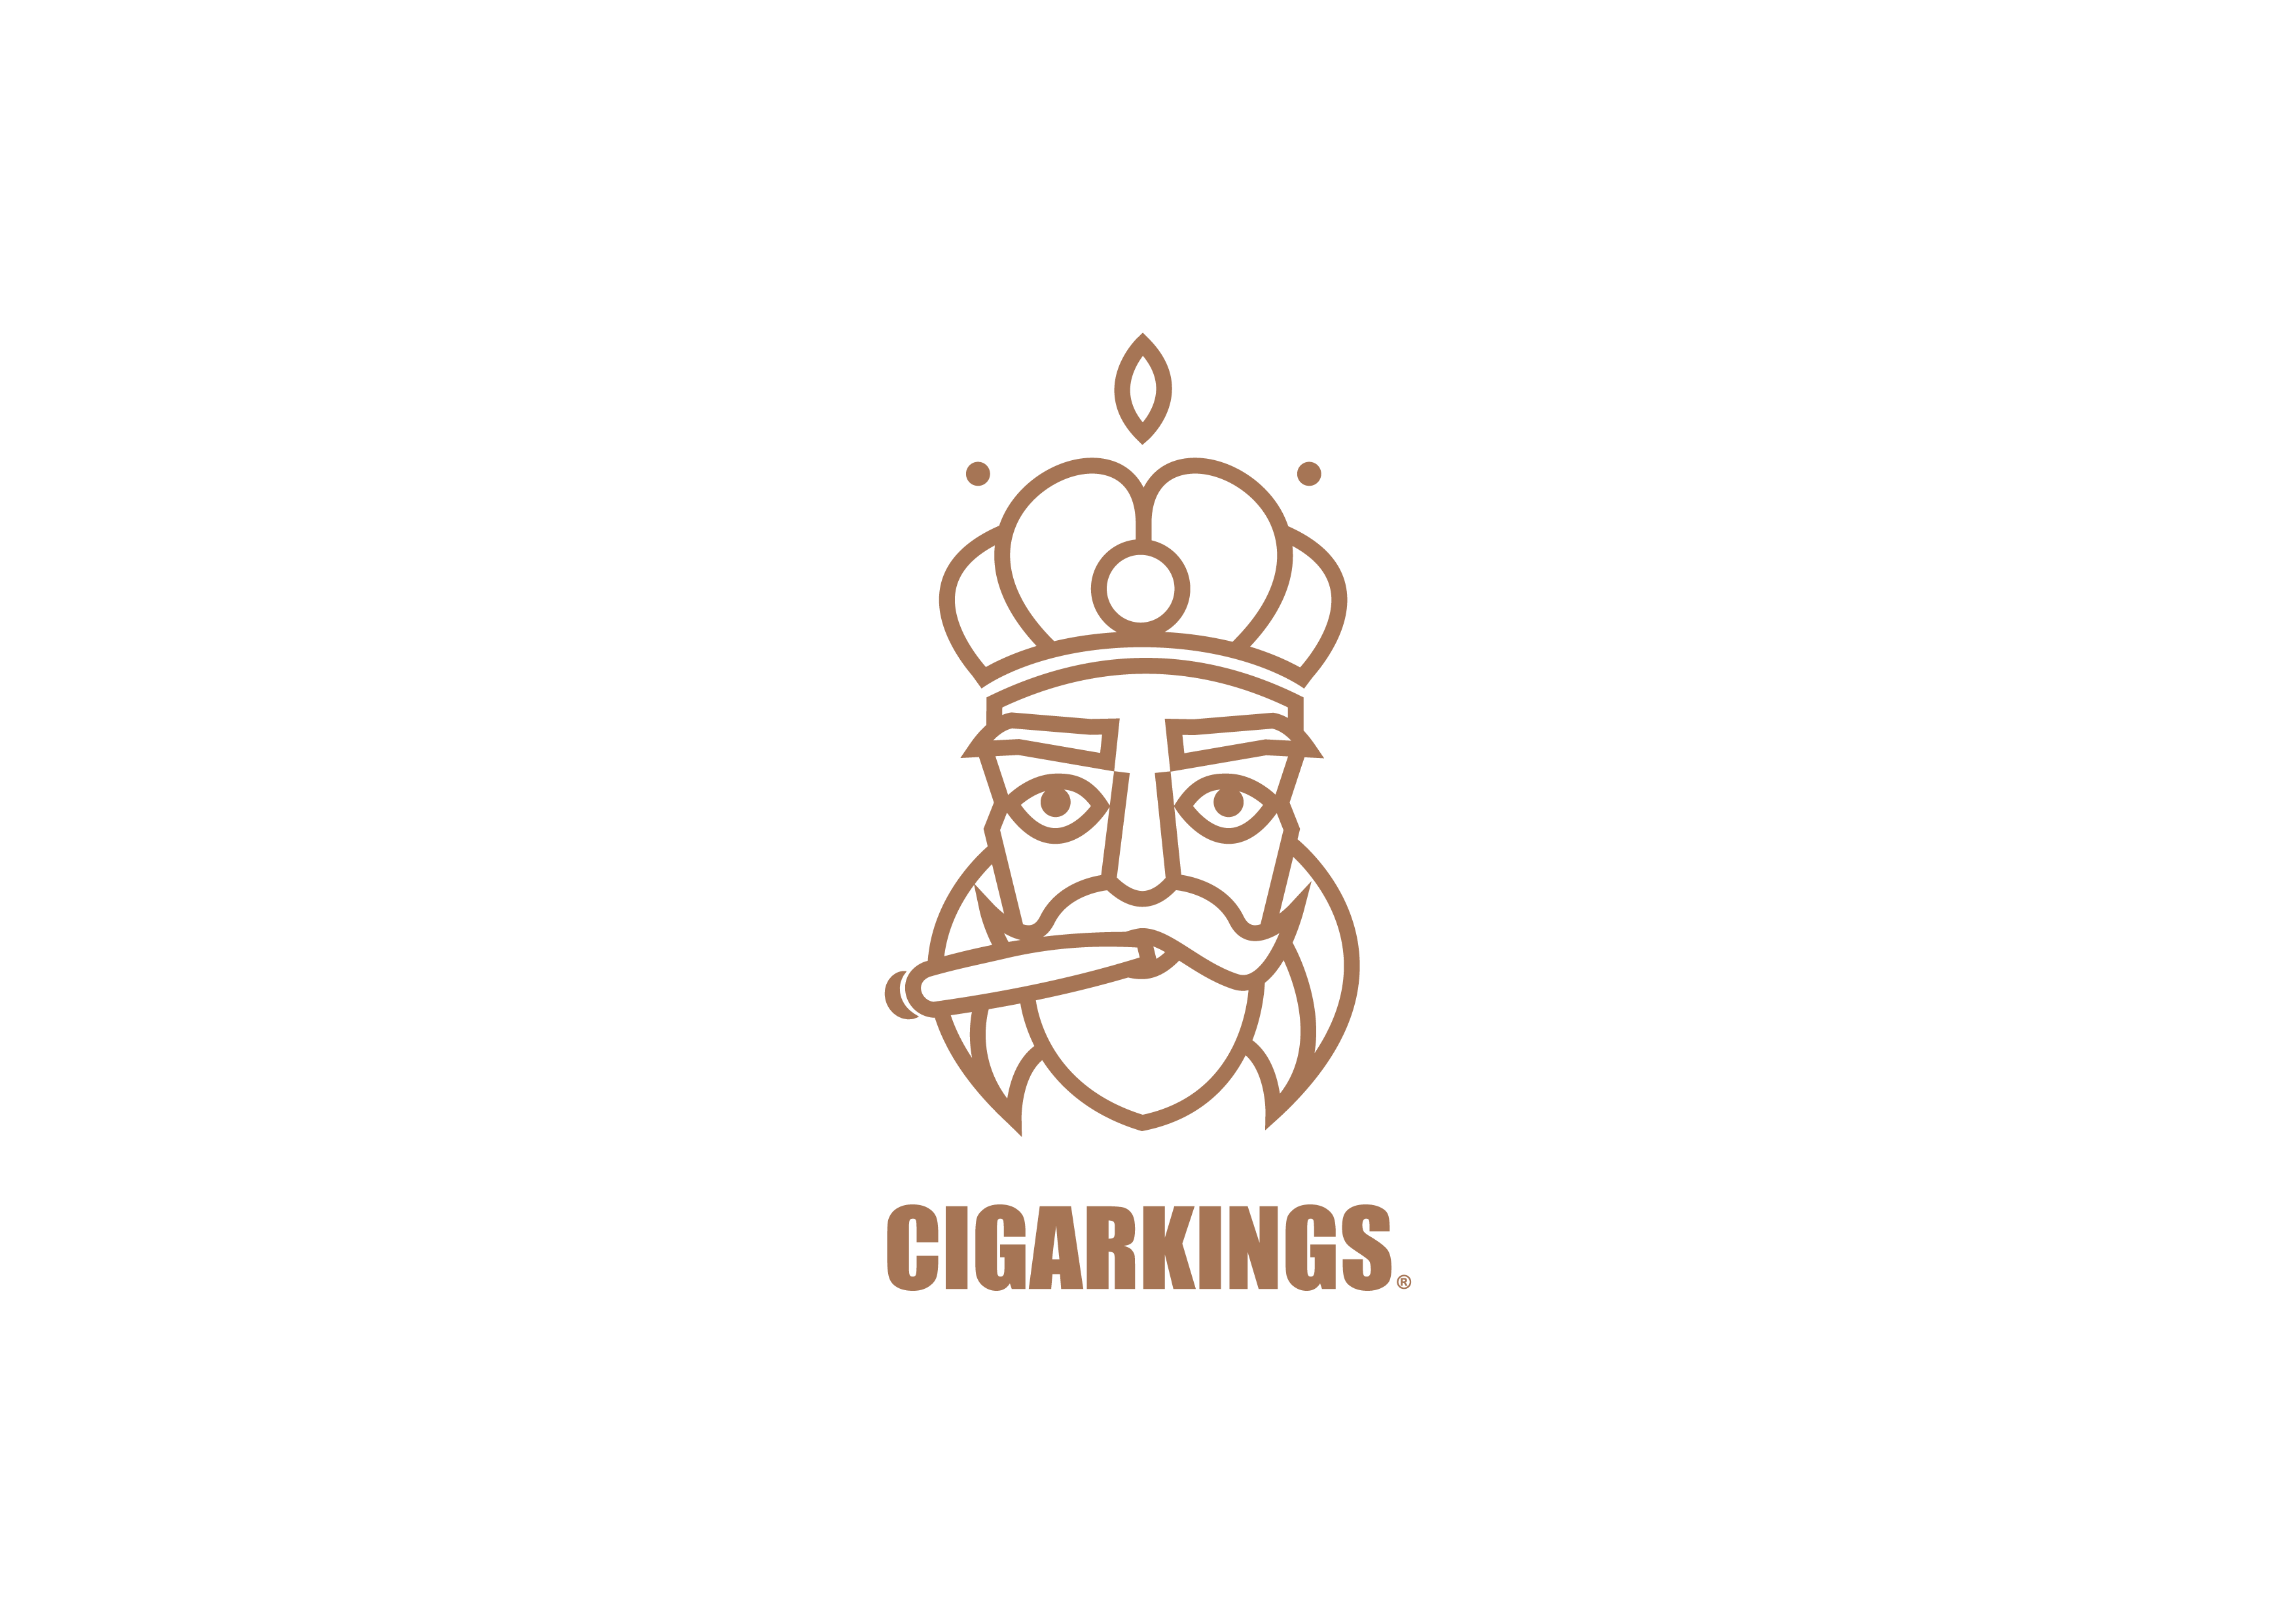 Cigarkings